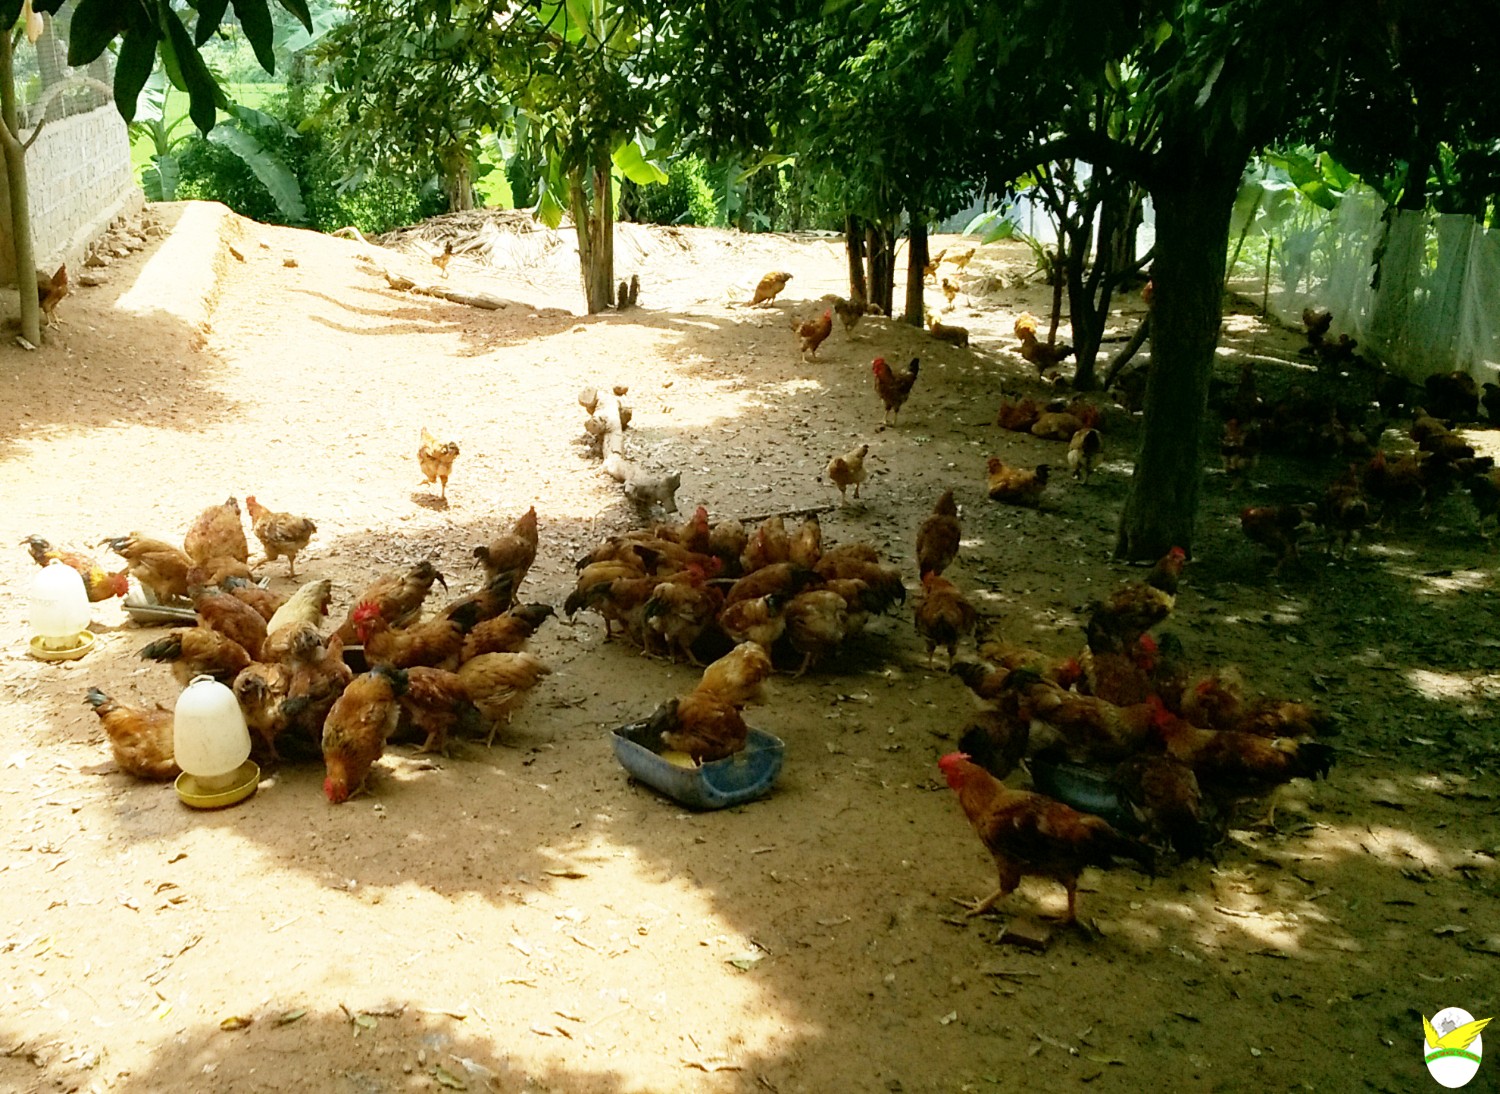 Trở thành tỷ phú nhờ chăn nuôi gà thả vườn  Choluoicom